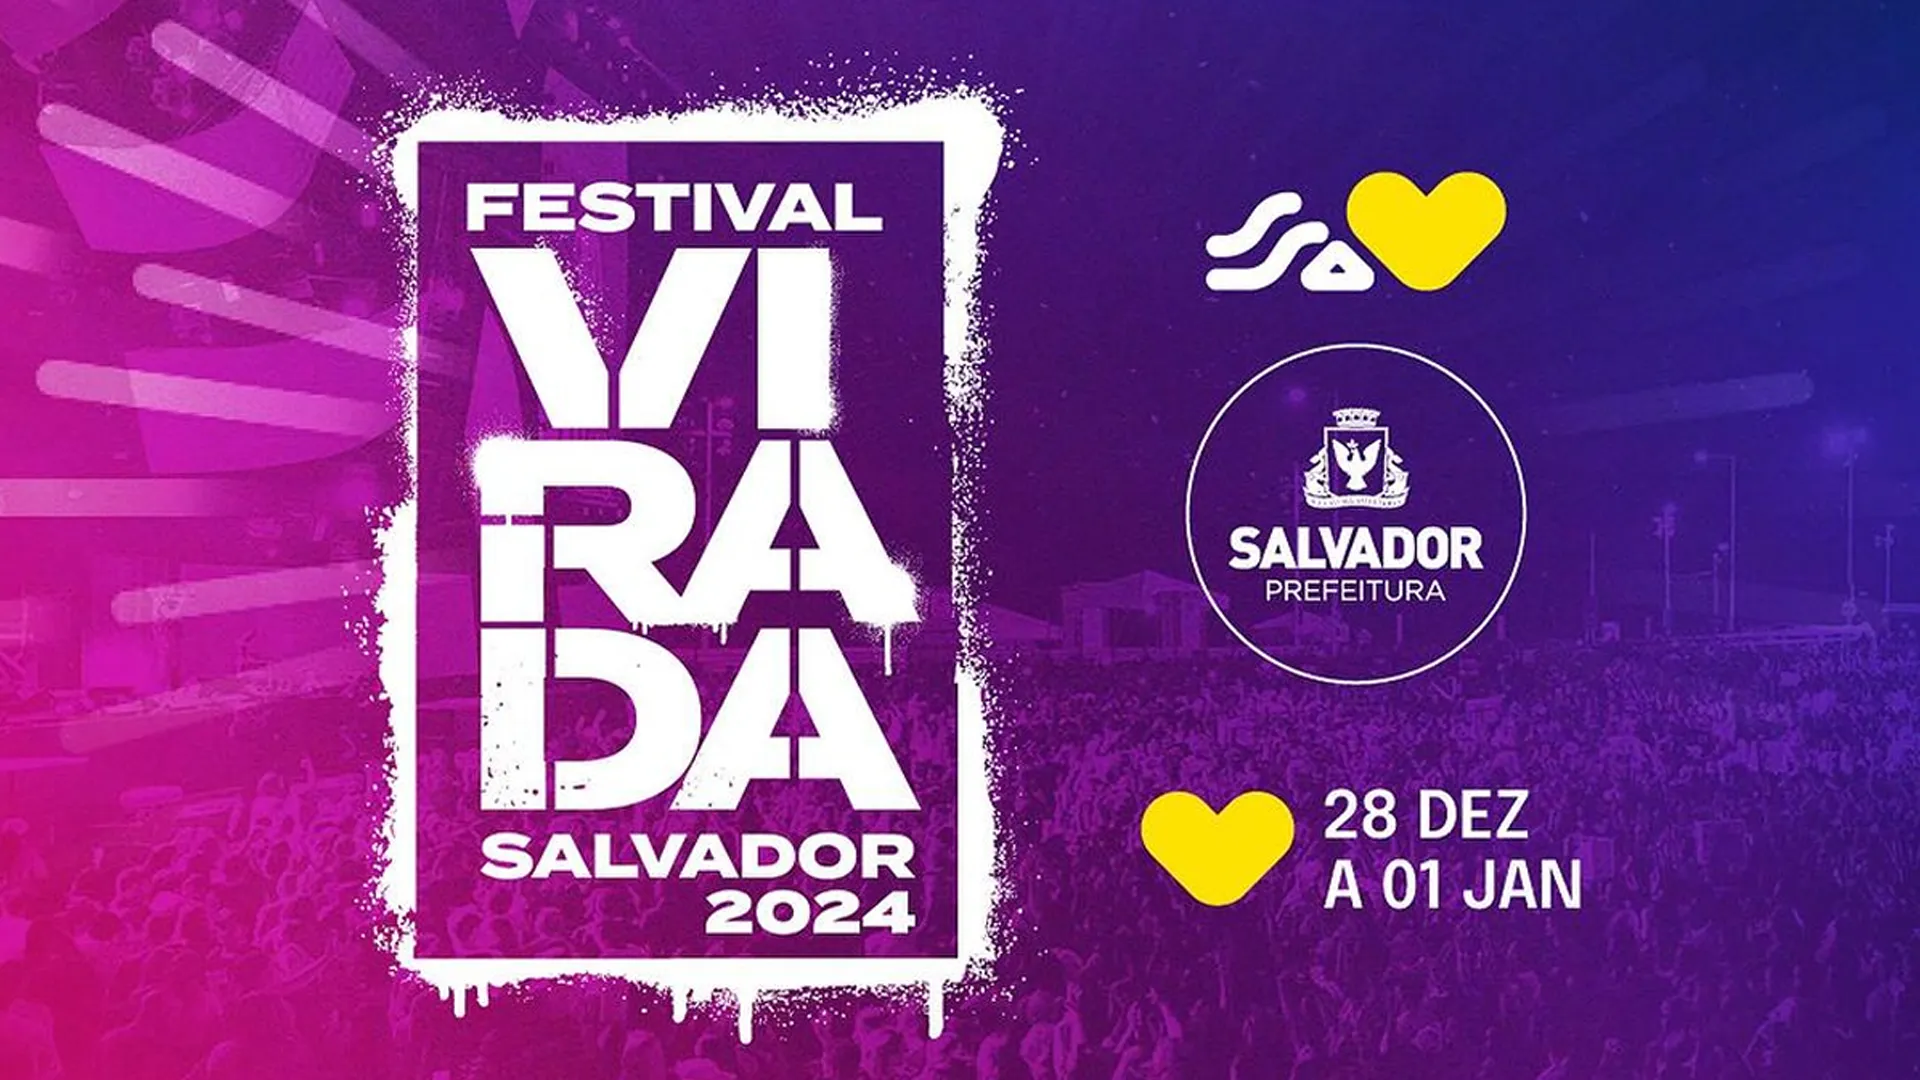 
		Festival Virada Salvador 2024 - 01 de janeiro